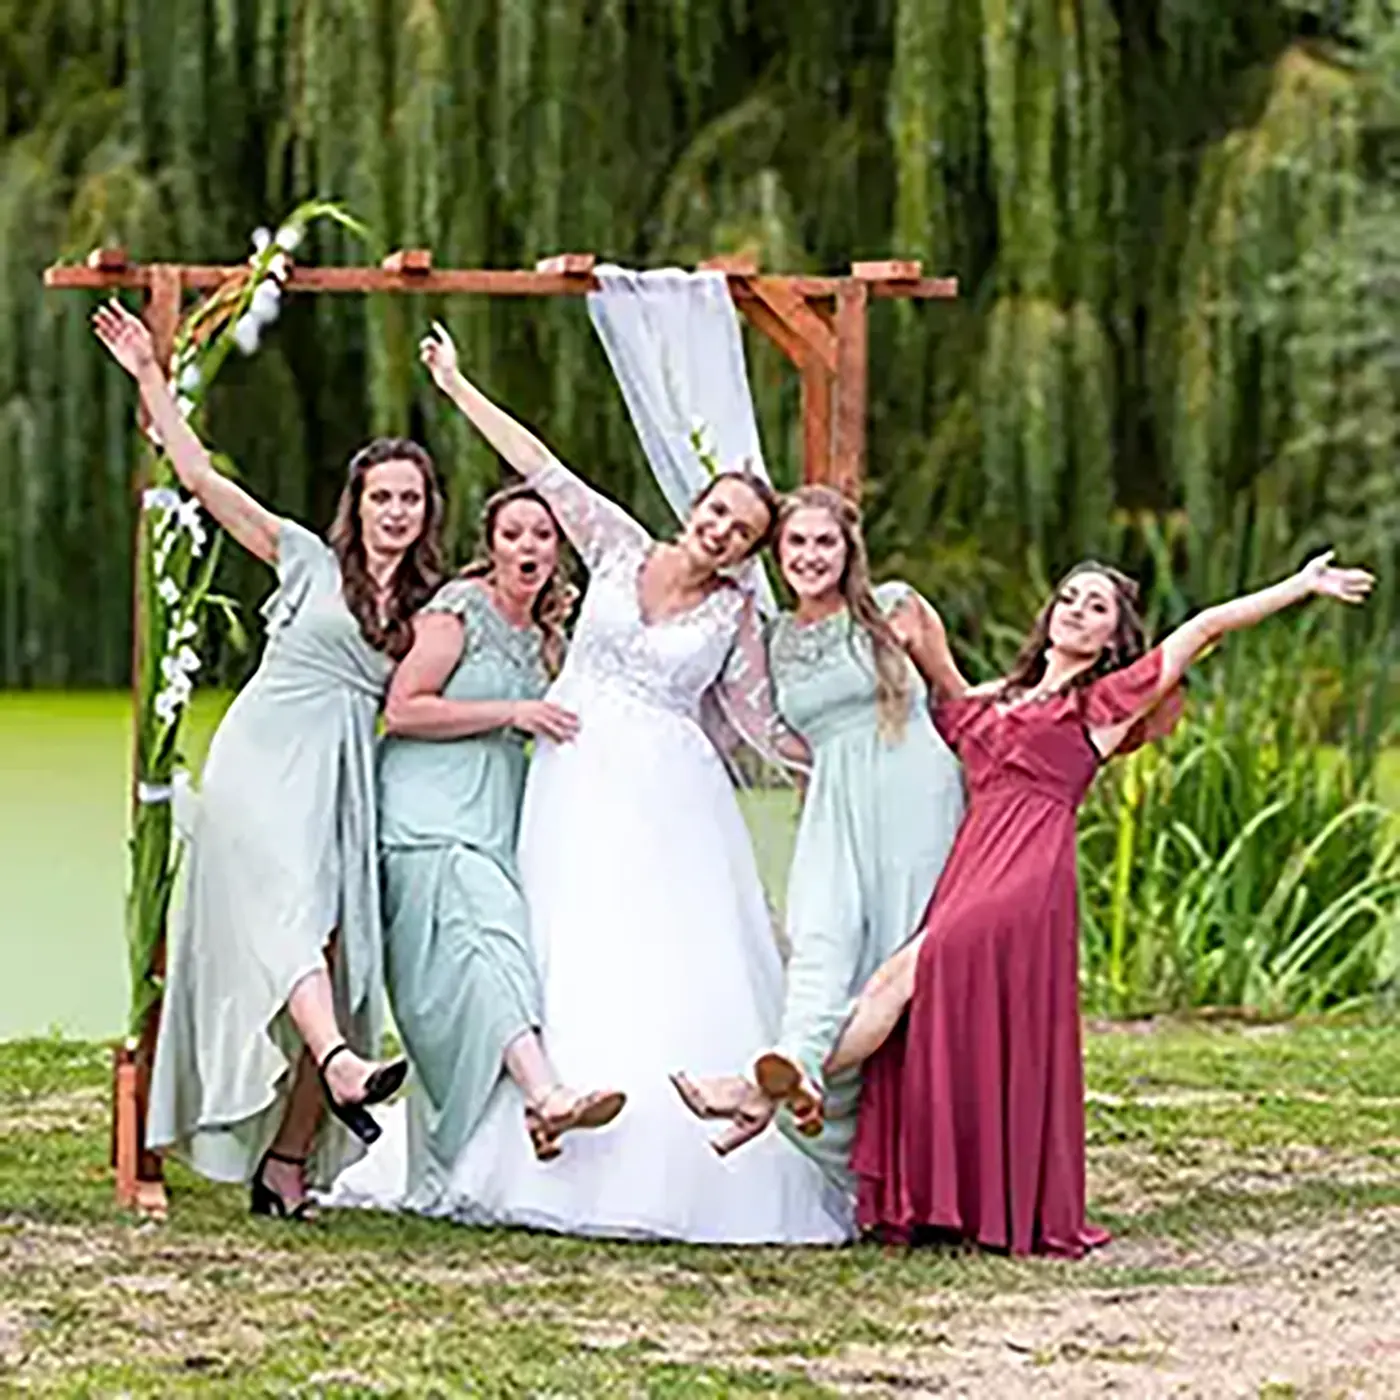 Mariée joyeuse avec ses demoiselles d'honneur posant de manière espiègle sous un arche de mariage dans un jardin.